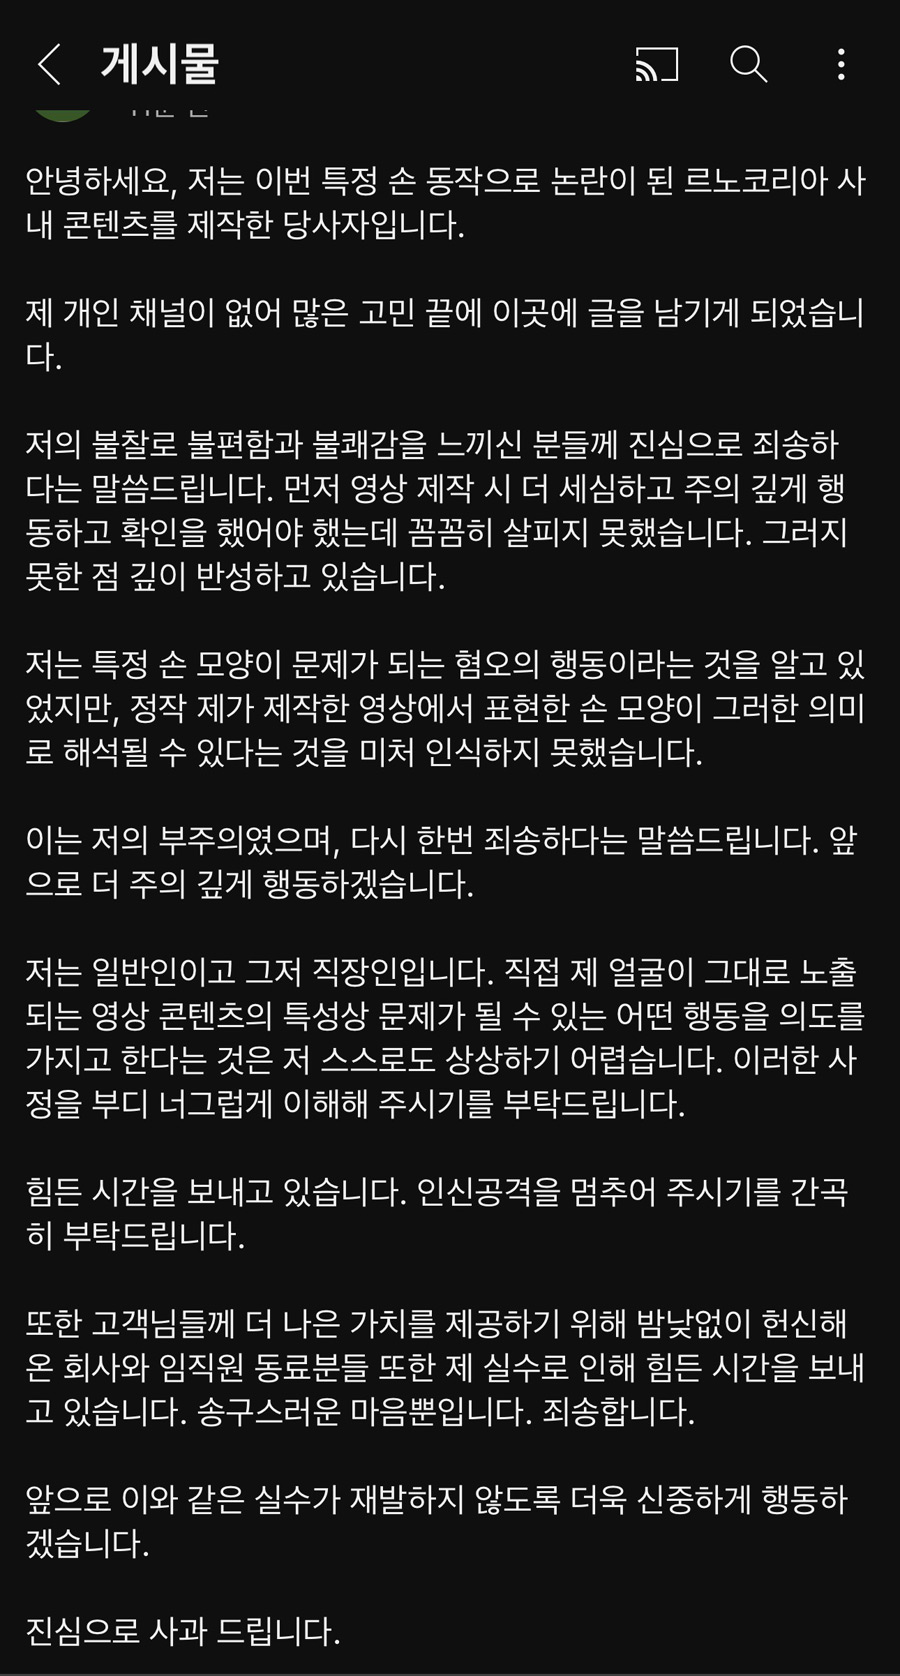 르노 코리아 영상 제작자 사과문